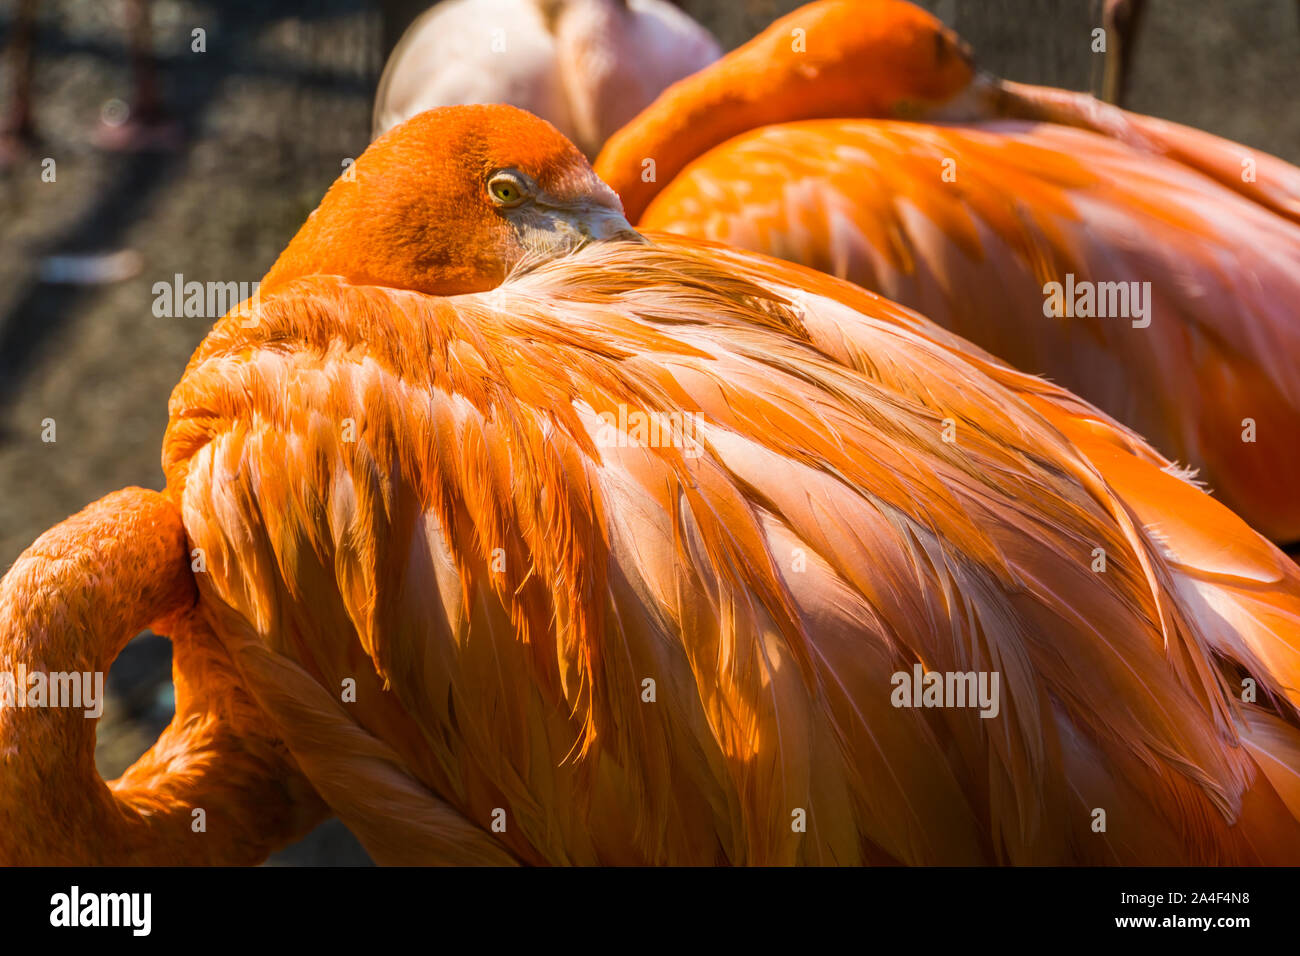 Primo piano del volto di un american flamingo, tipico comportamento degli uccelli tropicali, specie animale da Cuba Foto Stock